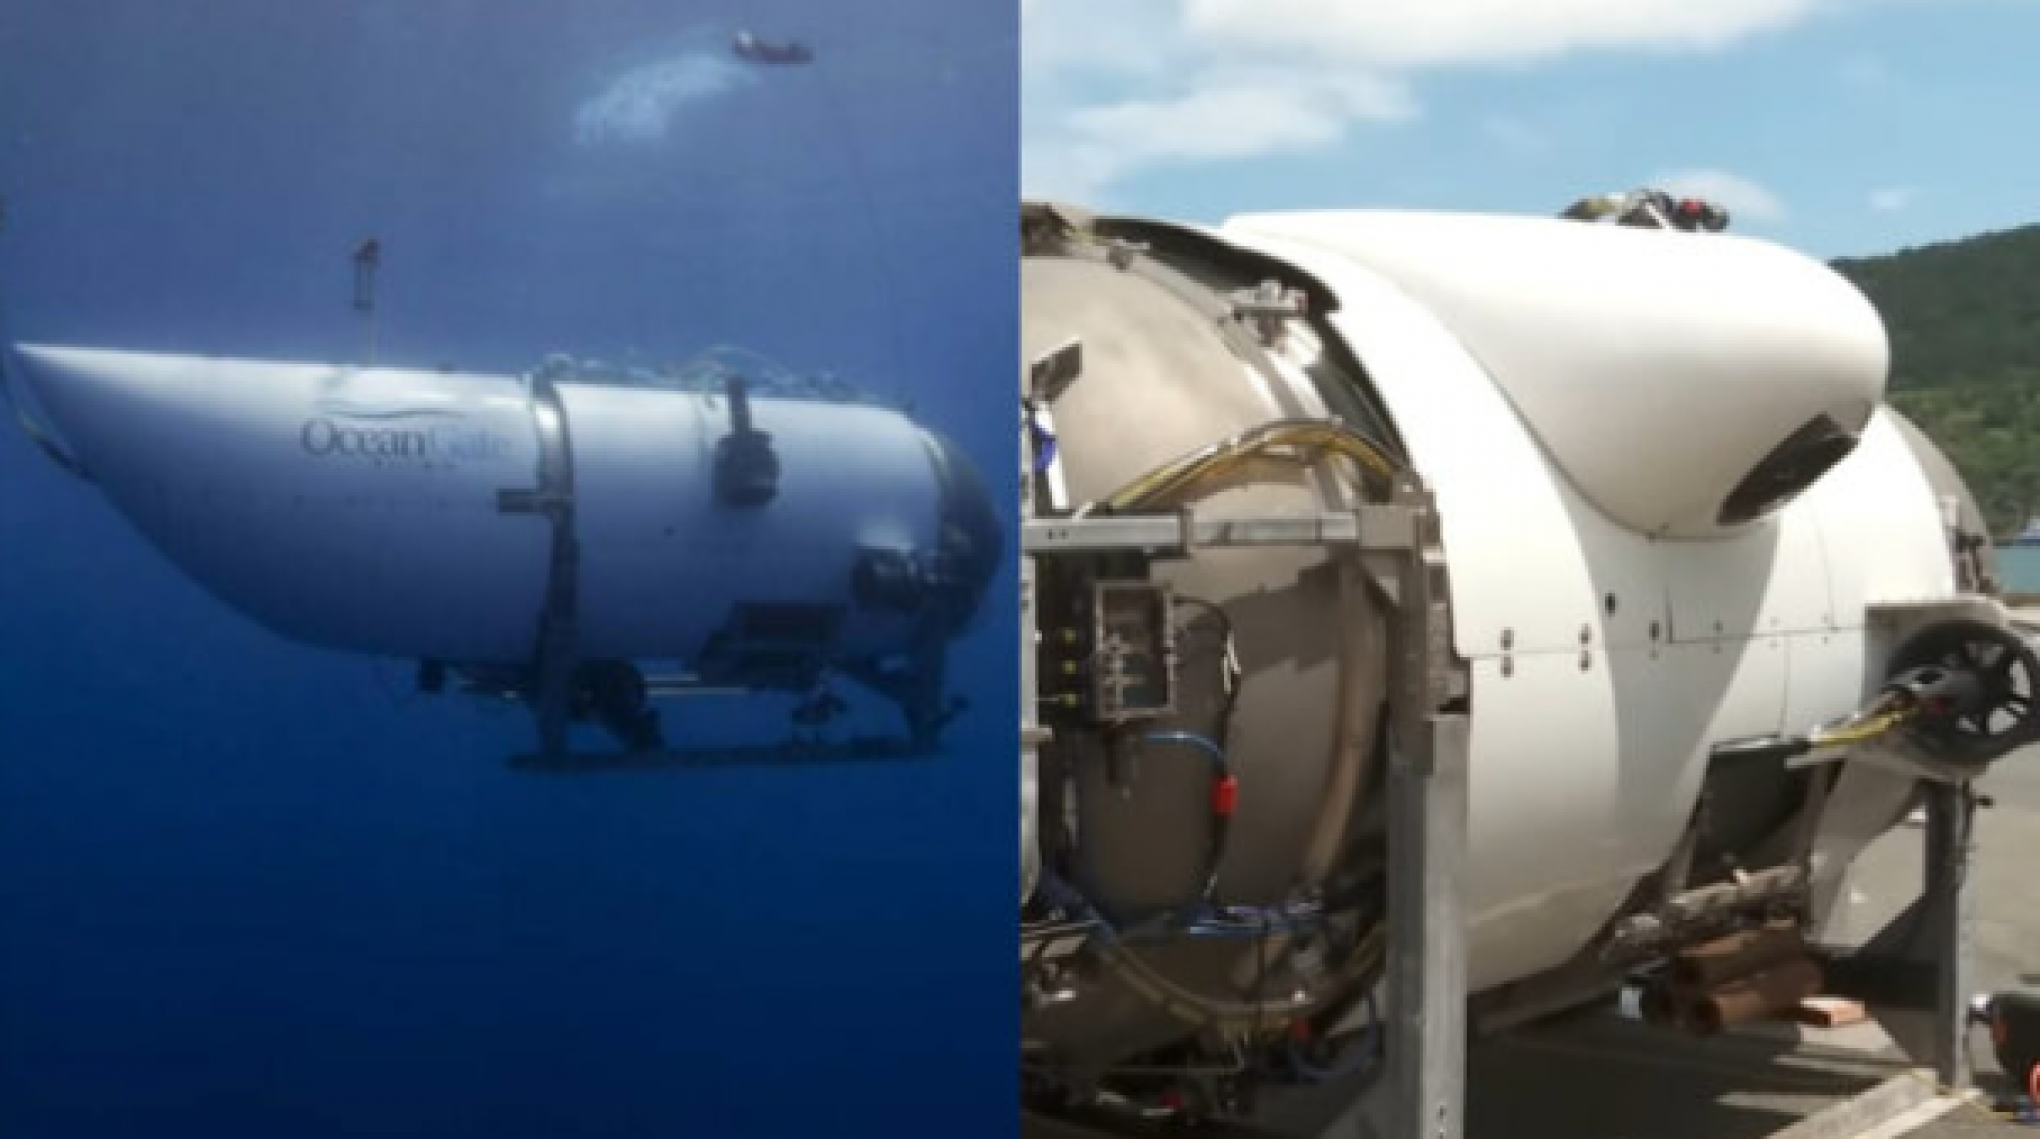 SUBMARINO DO TITANIC: Áudio divulgado mostra sons que parecem de batidas vindas do submersível que implodiu